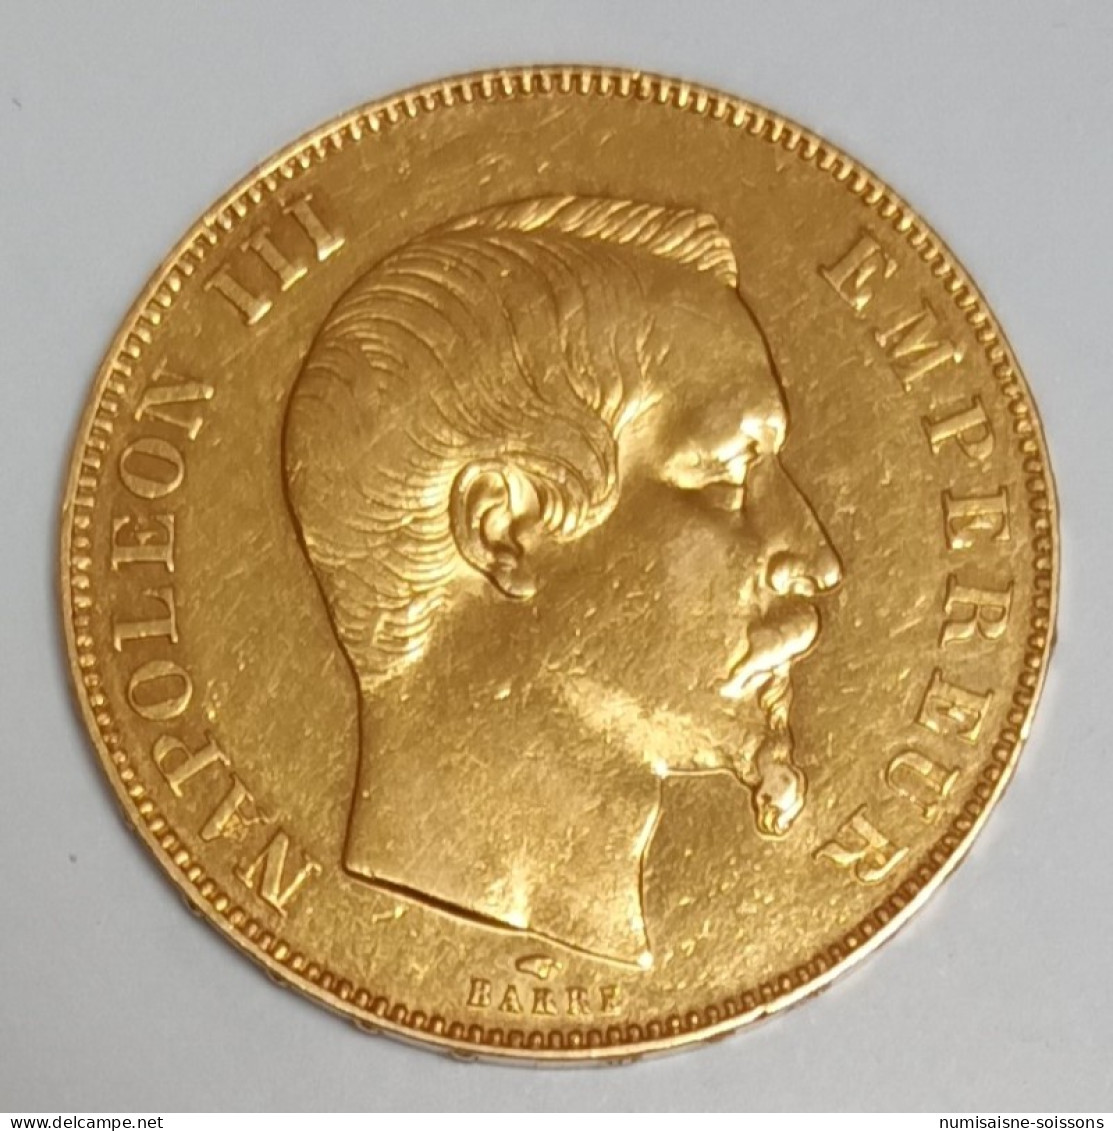 GADOURY 1111 - 50 FRANCS 1857 A - Paris - OR - NAPOLÉON III - KM 785 - TTB+ - 50 Francs (gold)